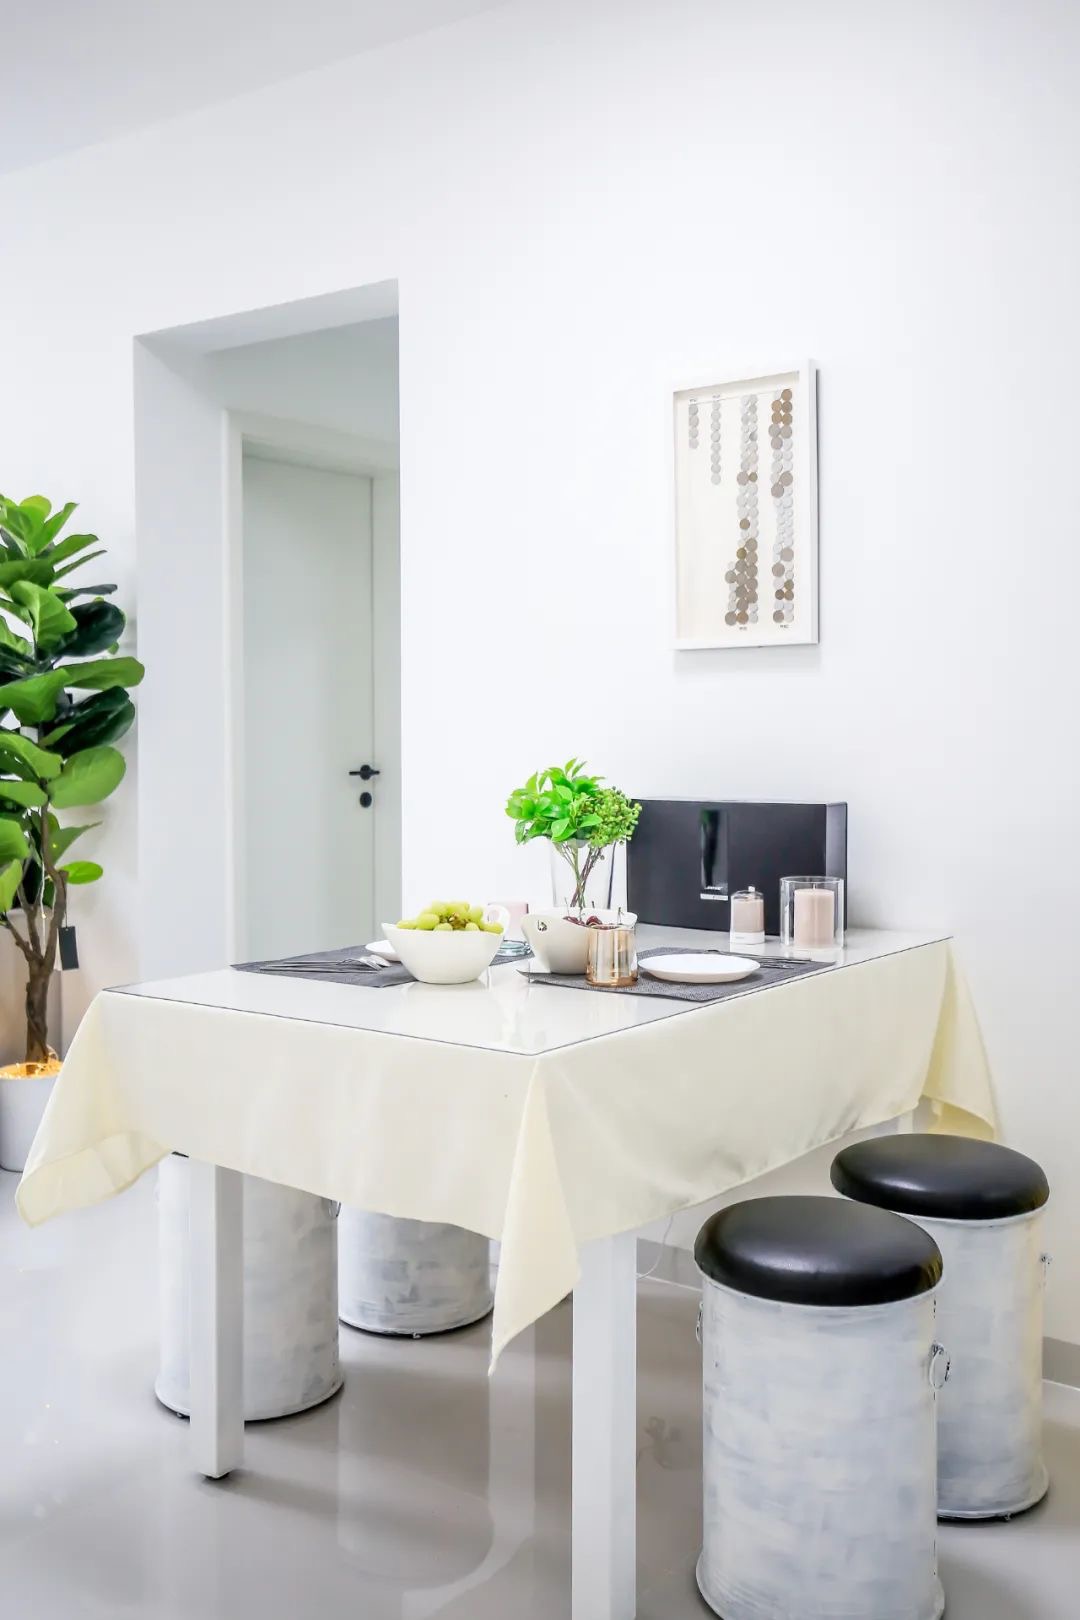 白色方形餐桌搭配圆凳餐椅，体现出简约的现代用餐氛围特点，静谧感十足。